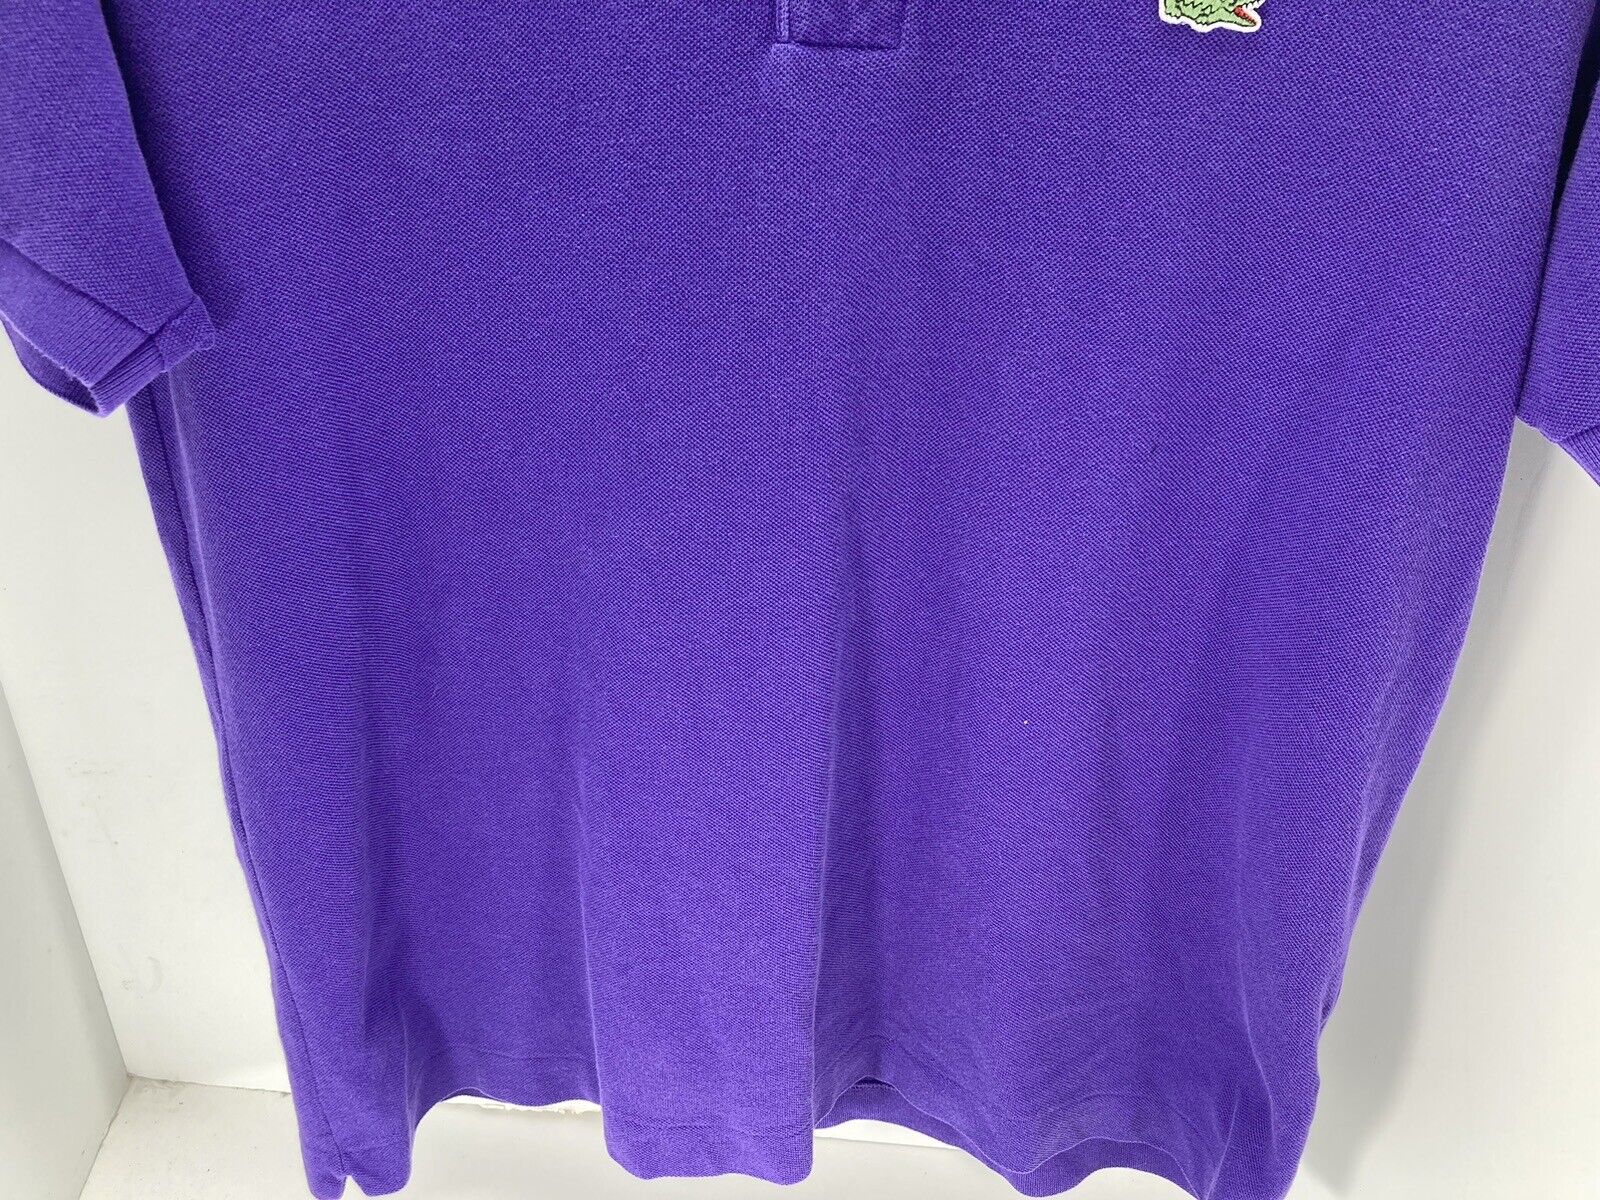 Lacoste Polo Shirt Men Size 6 Medium Purple Short Sleeve Cotton Knit Button